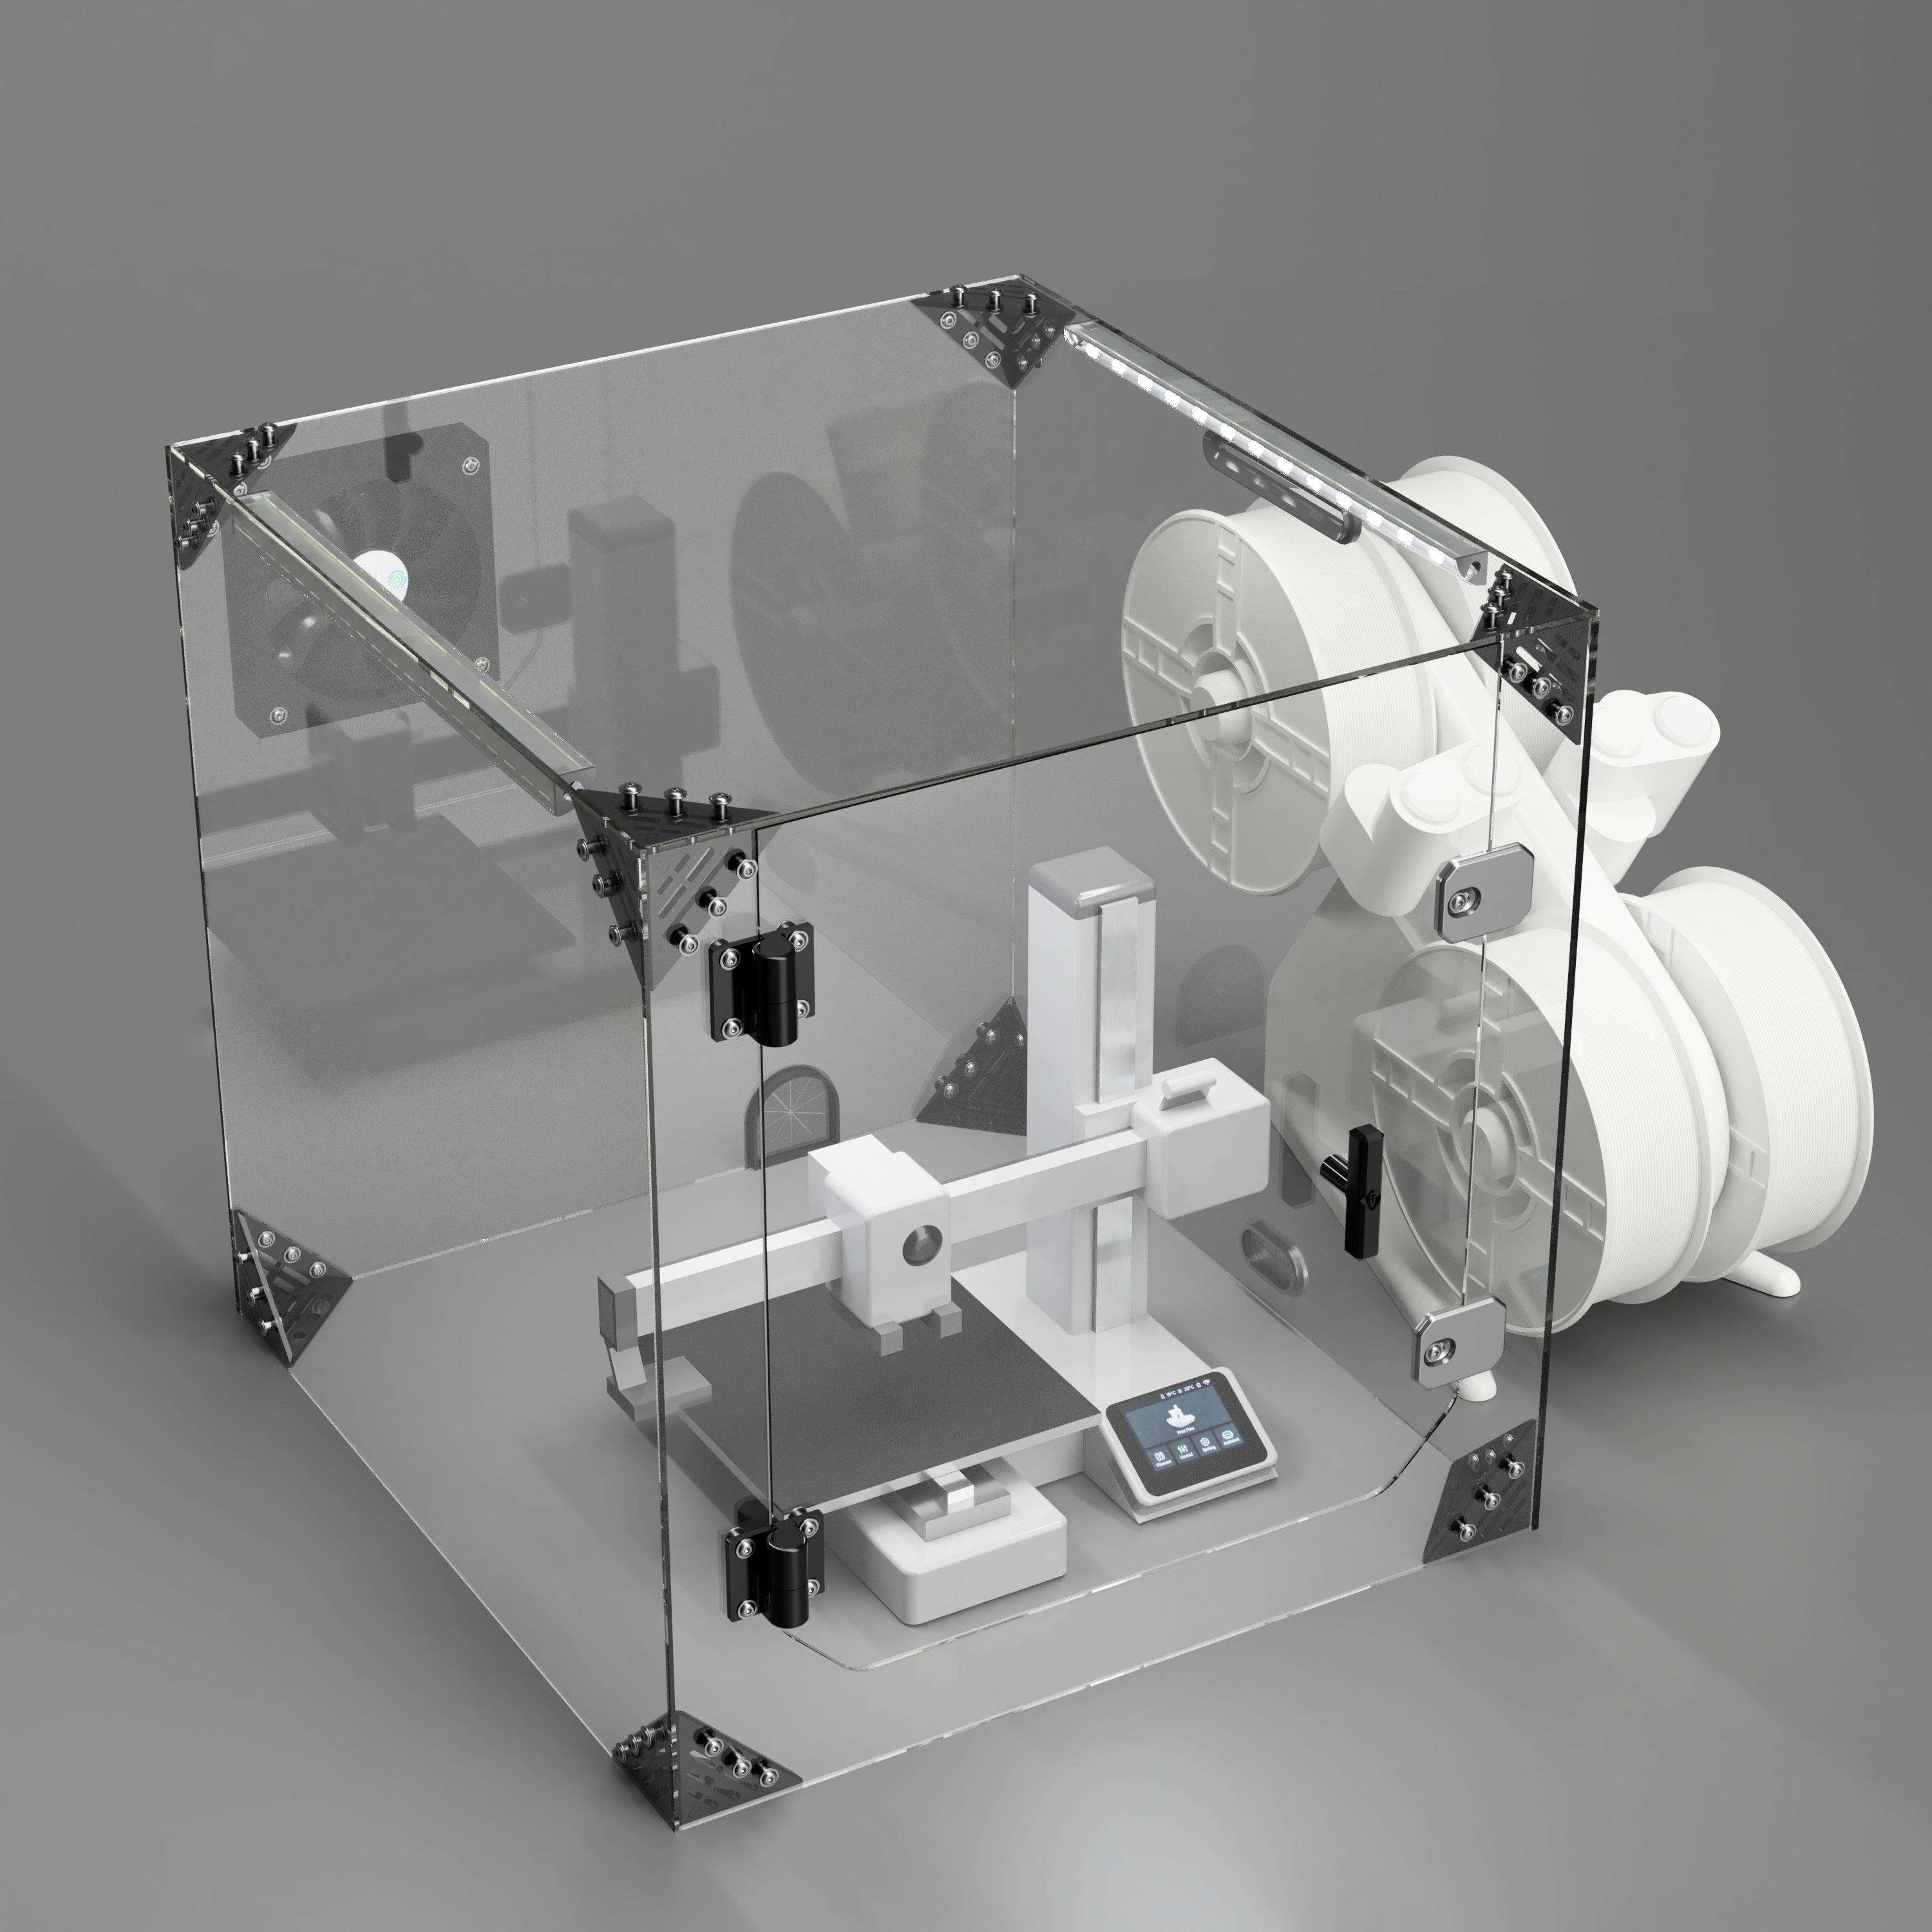 Bambu Lab A1 mini 3D Printer